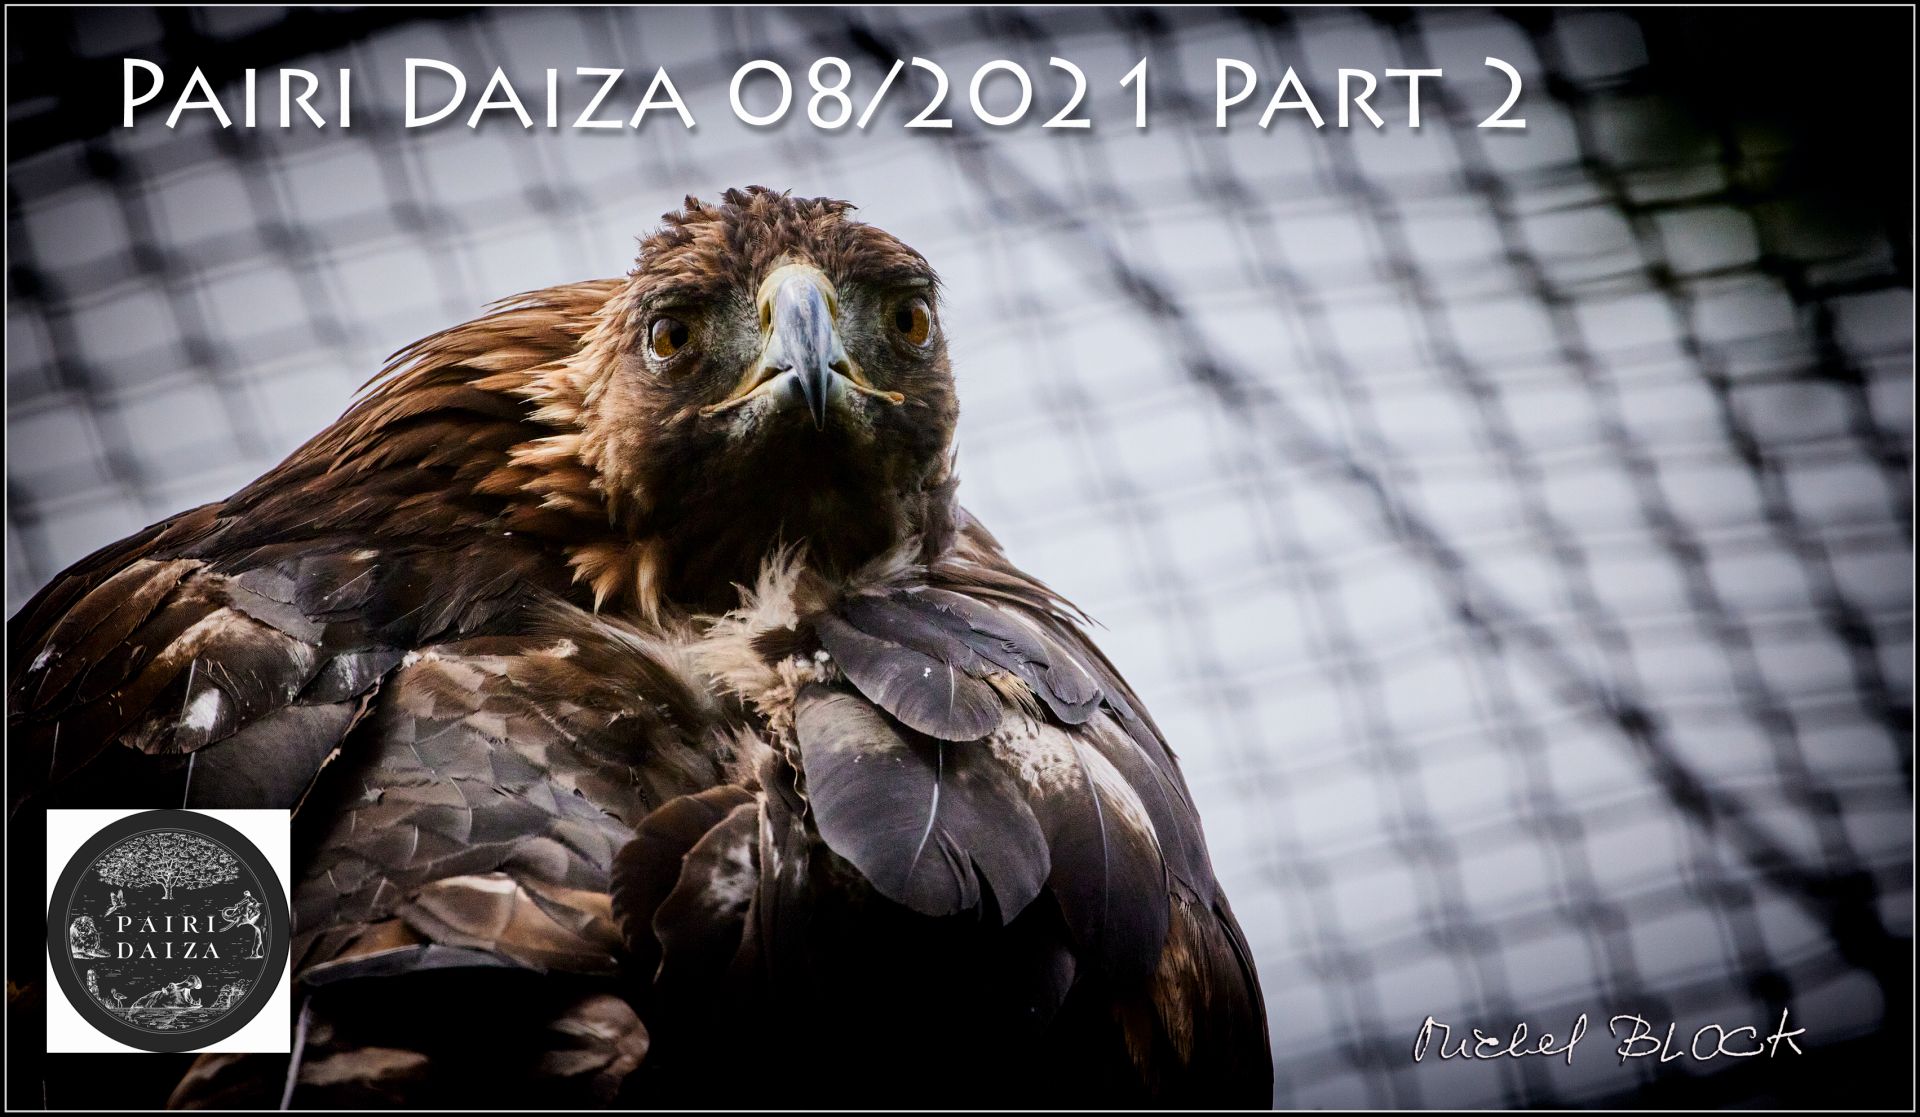 Pairi Daiza 08/2021 part 2